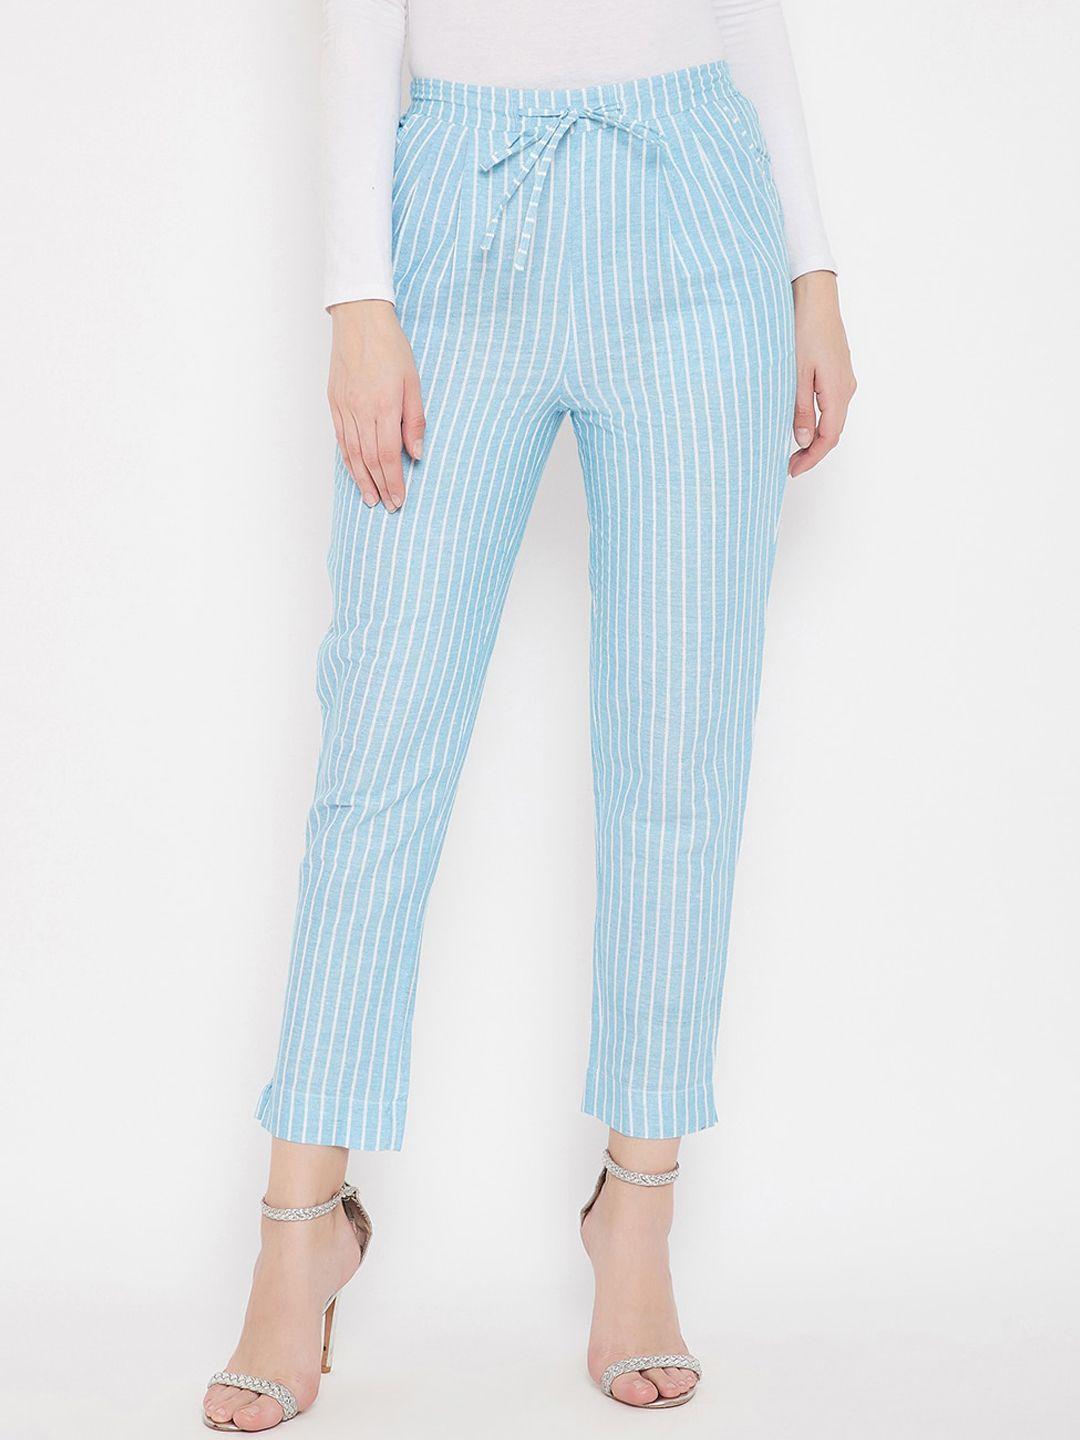 bitterlime women blue striped smart trousers